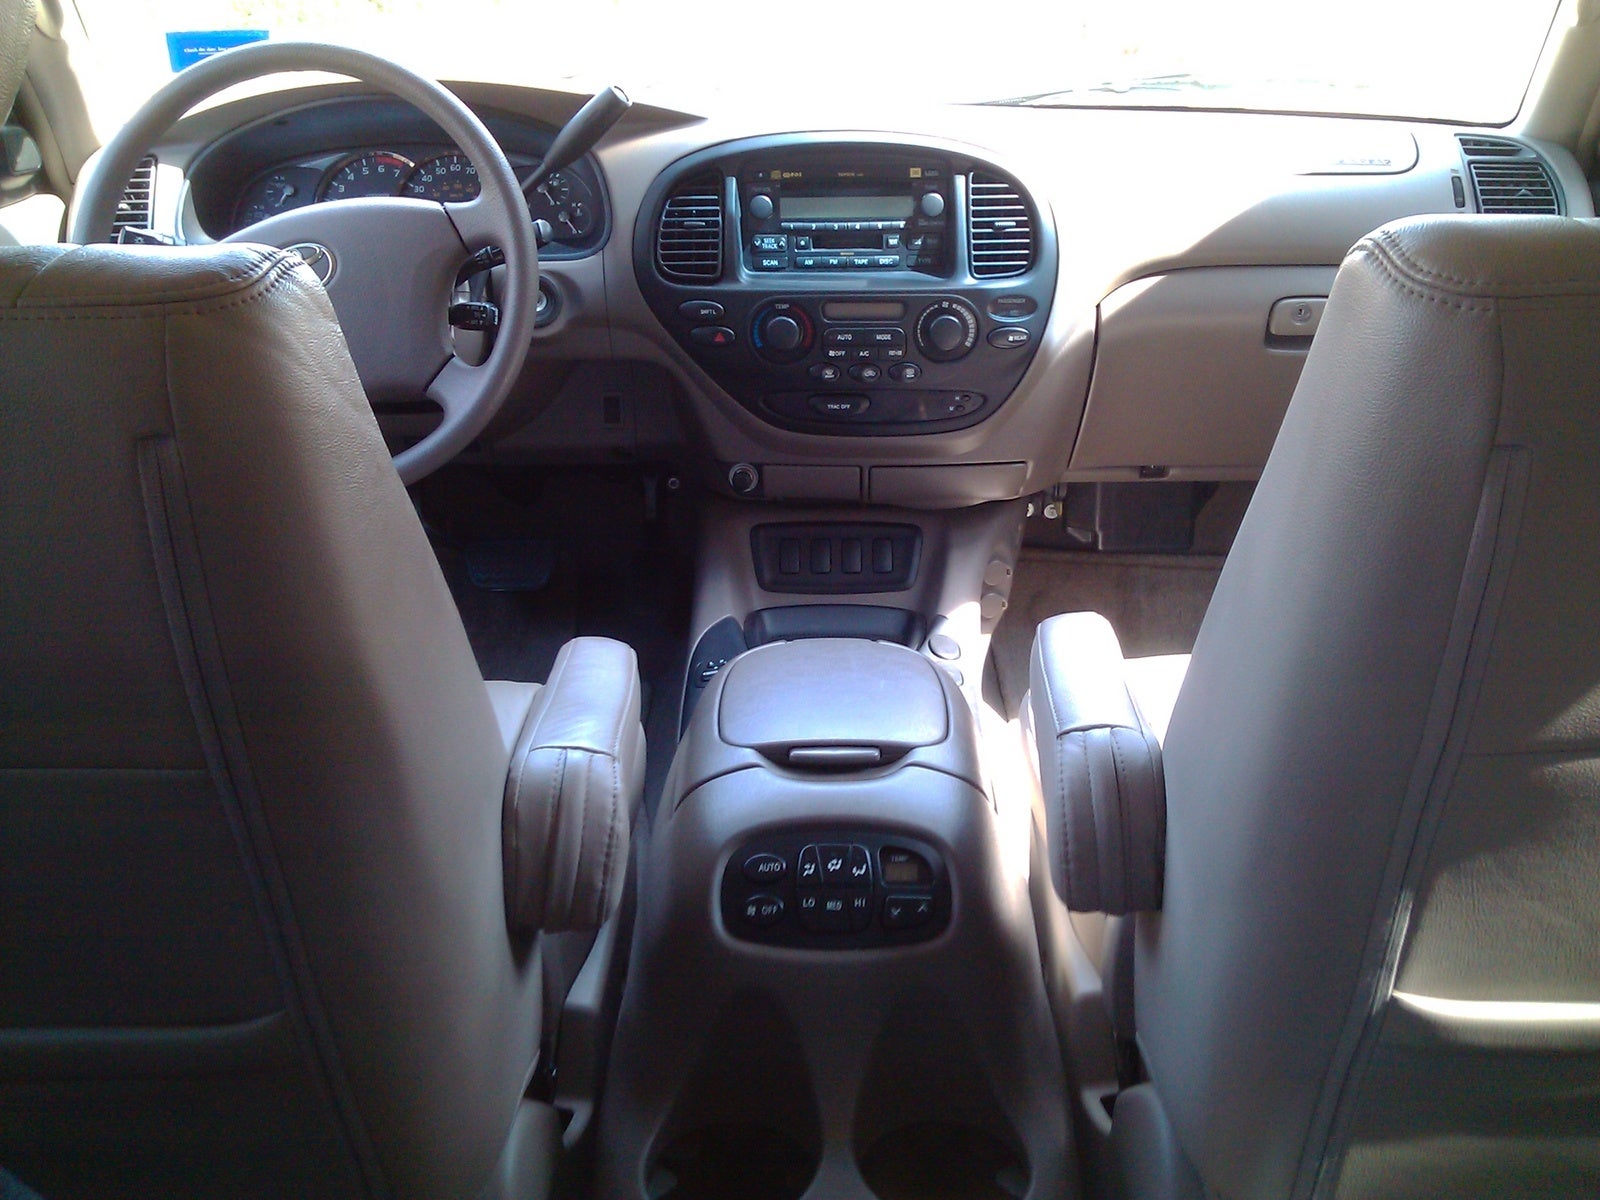 2007 Toyota Sequoia Interior Pictures CarGurus.